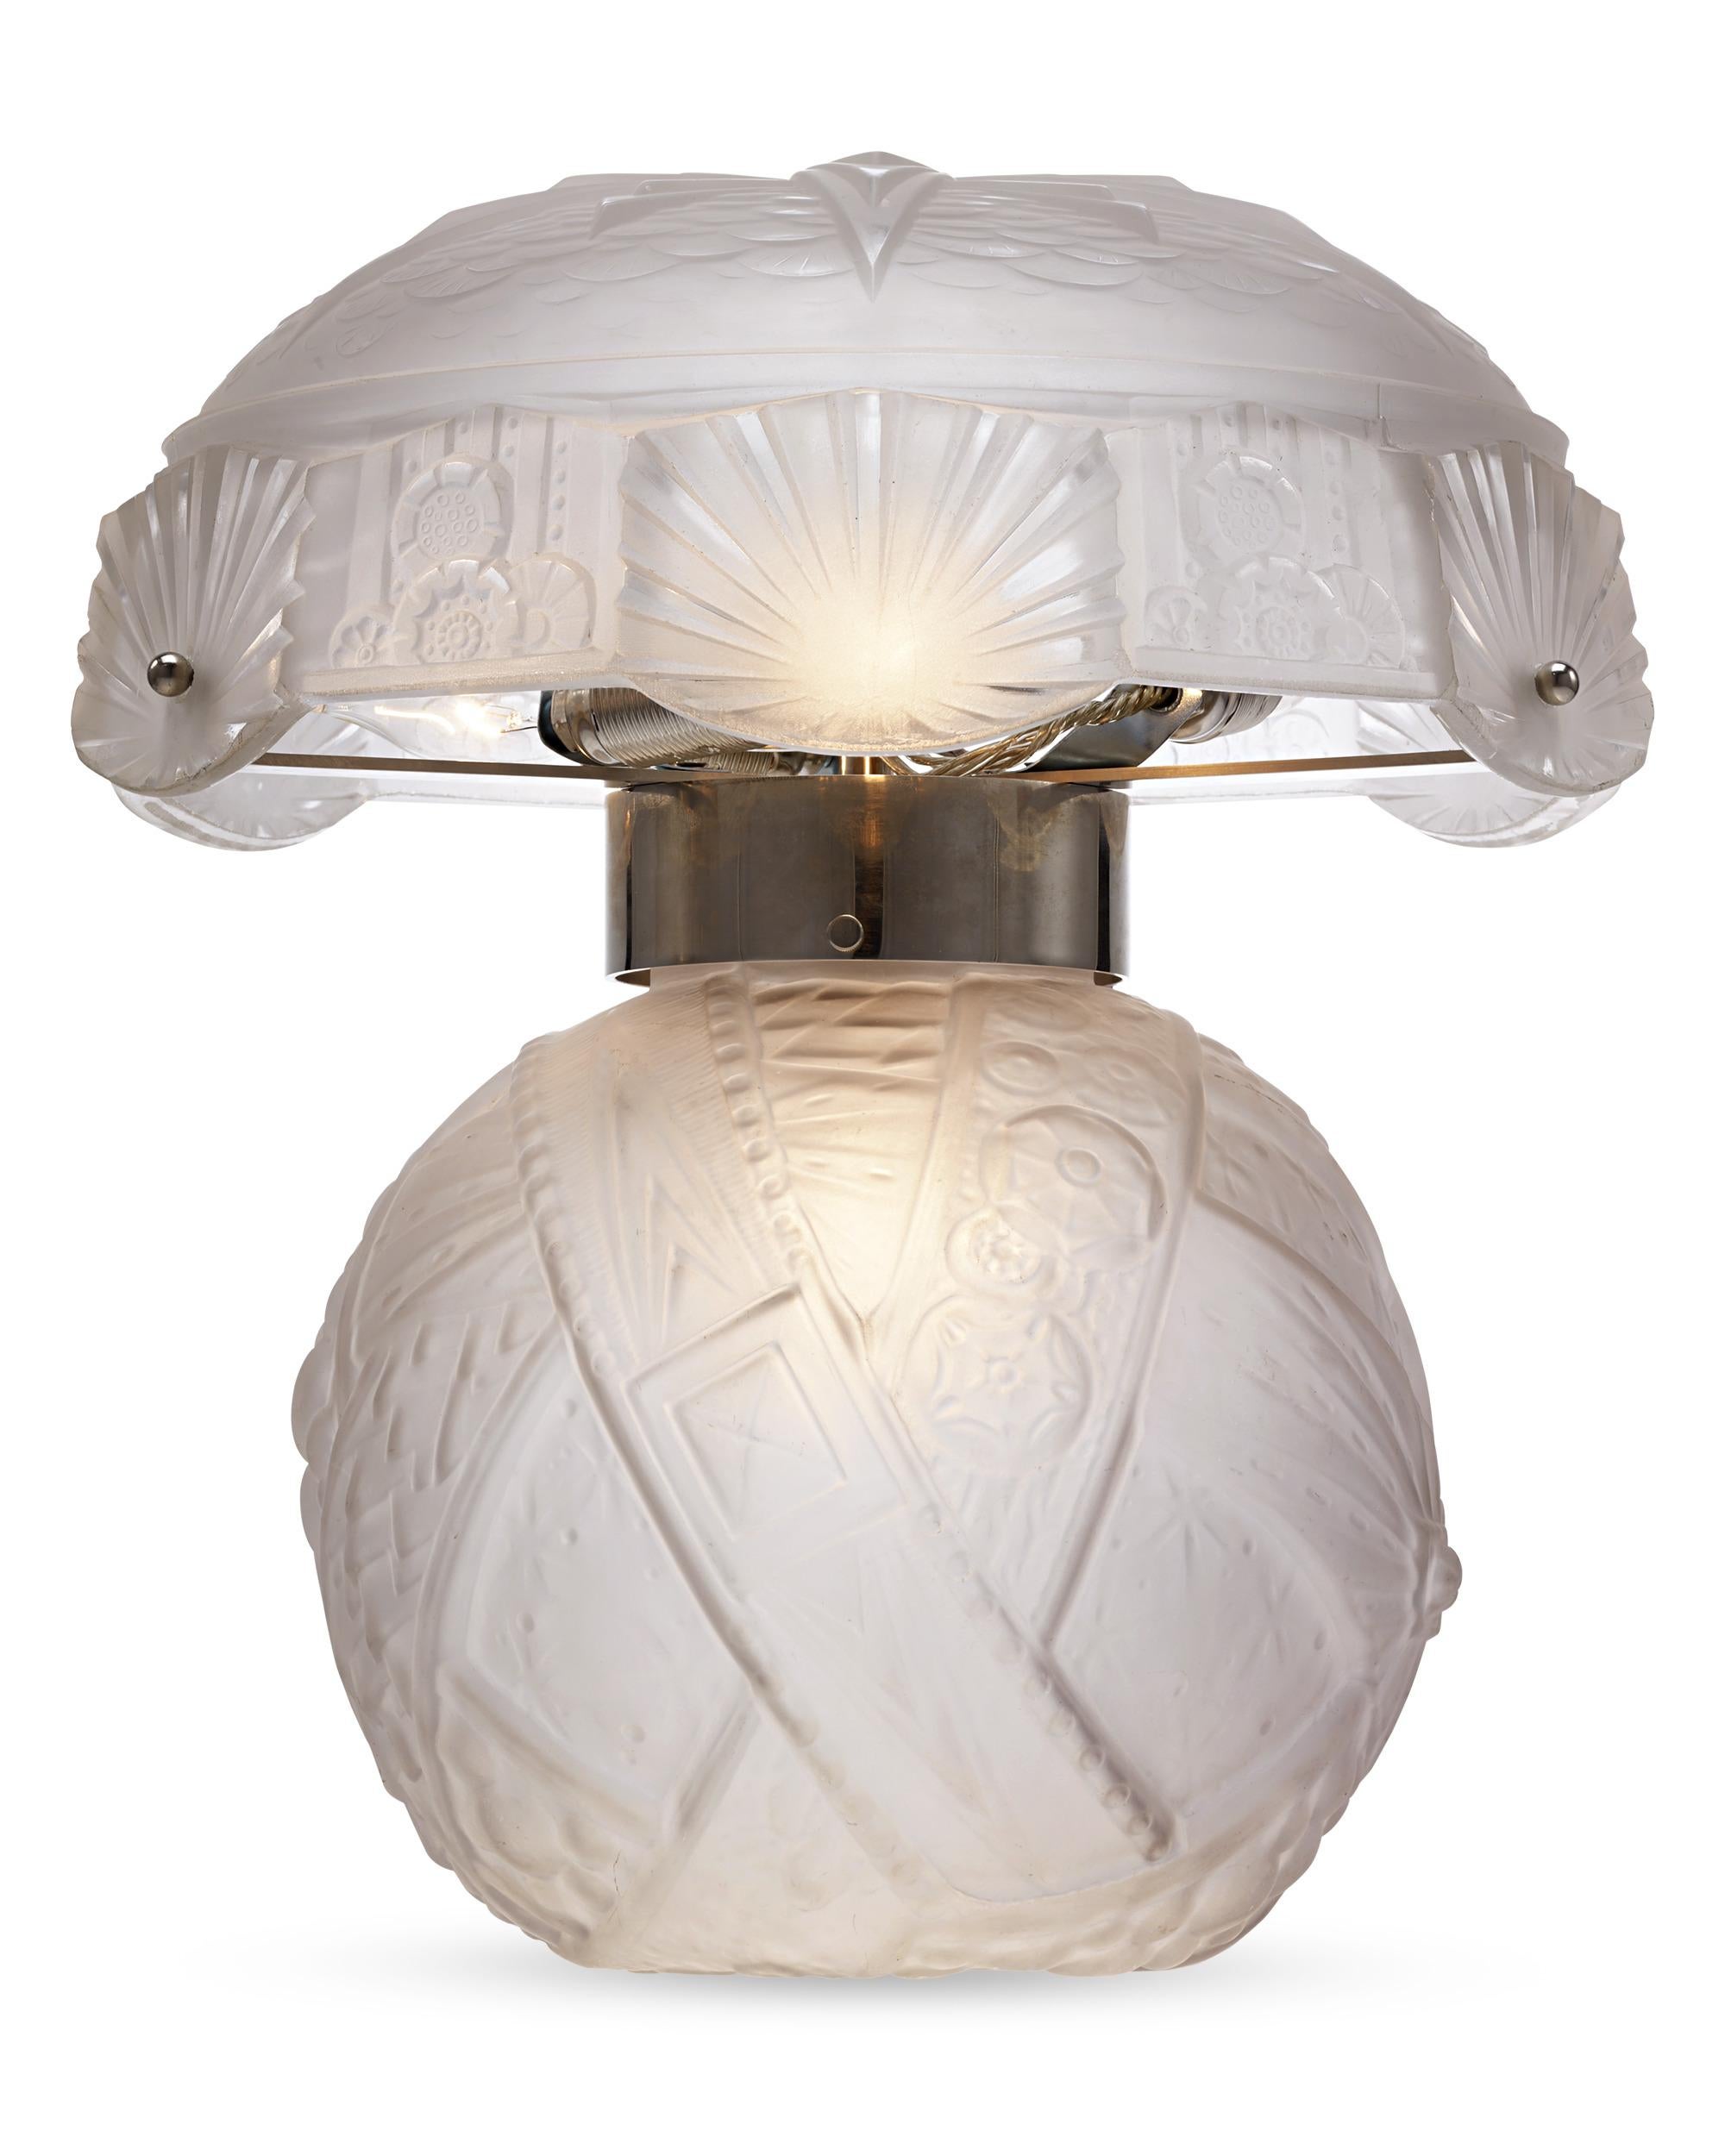 D'une qualité artistique exceptionnelle, ces lampes des célèbres artisans français Muller Frères diffusent une lumière séduisante rappelant un doux clair de lune. La base et l'abat-jour sont fabriqués en verre dépoli délicatement gravé de motifs